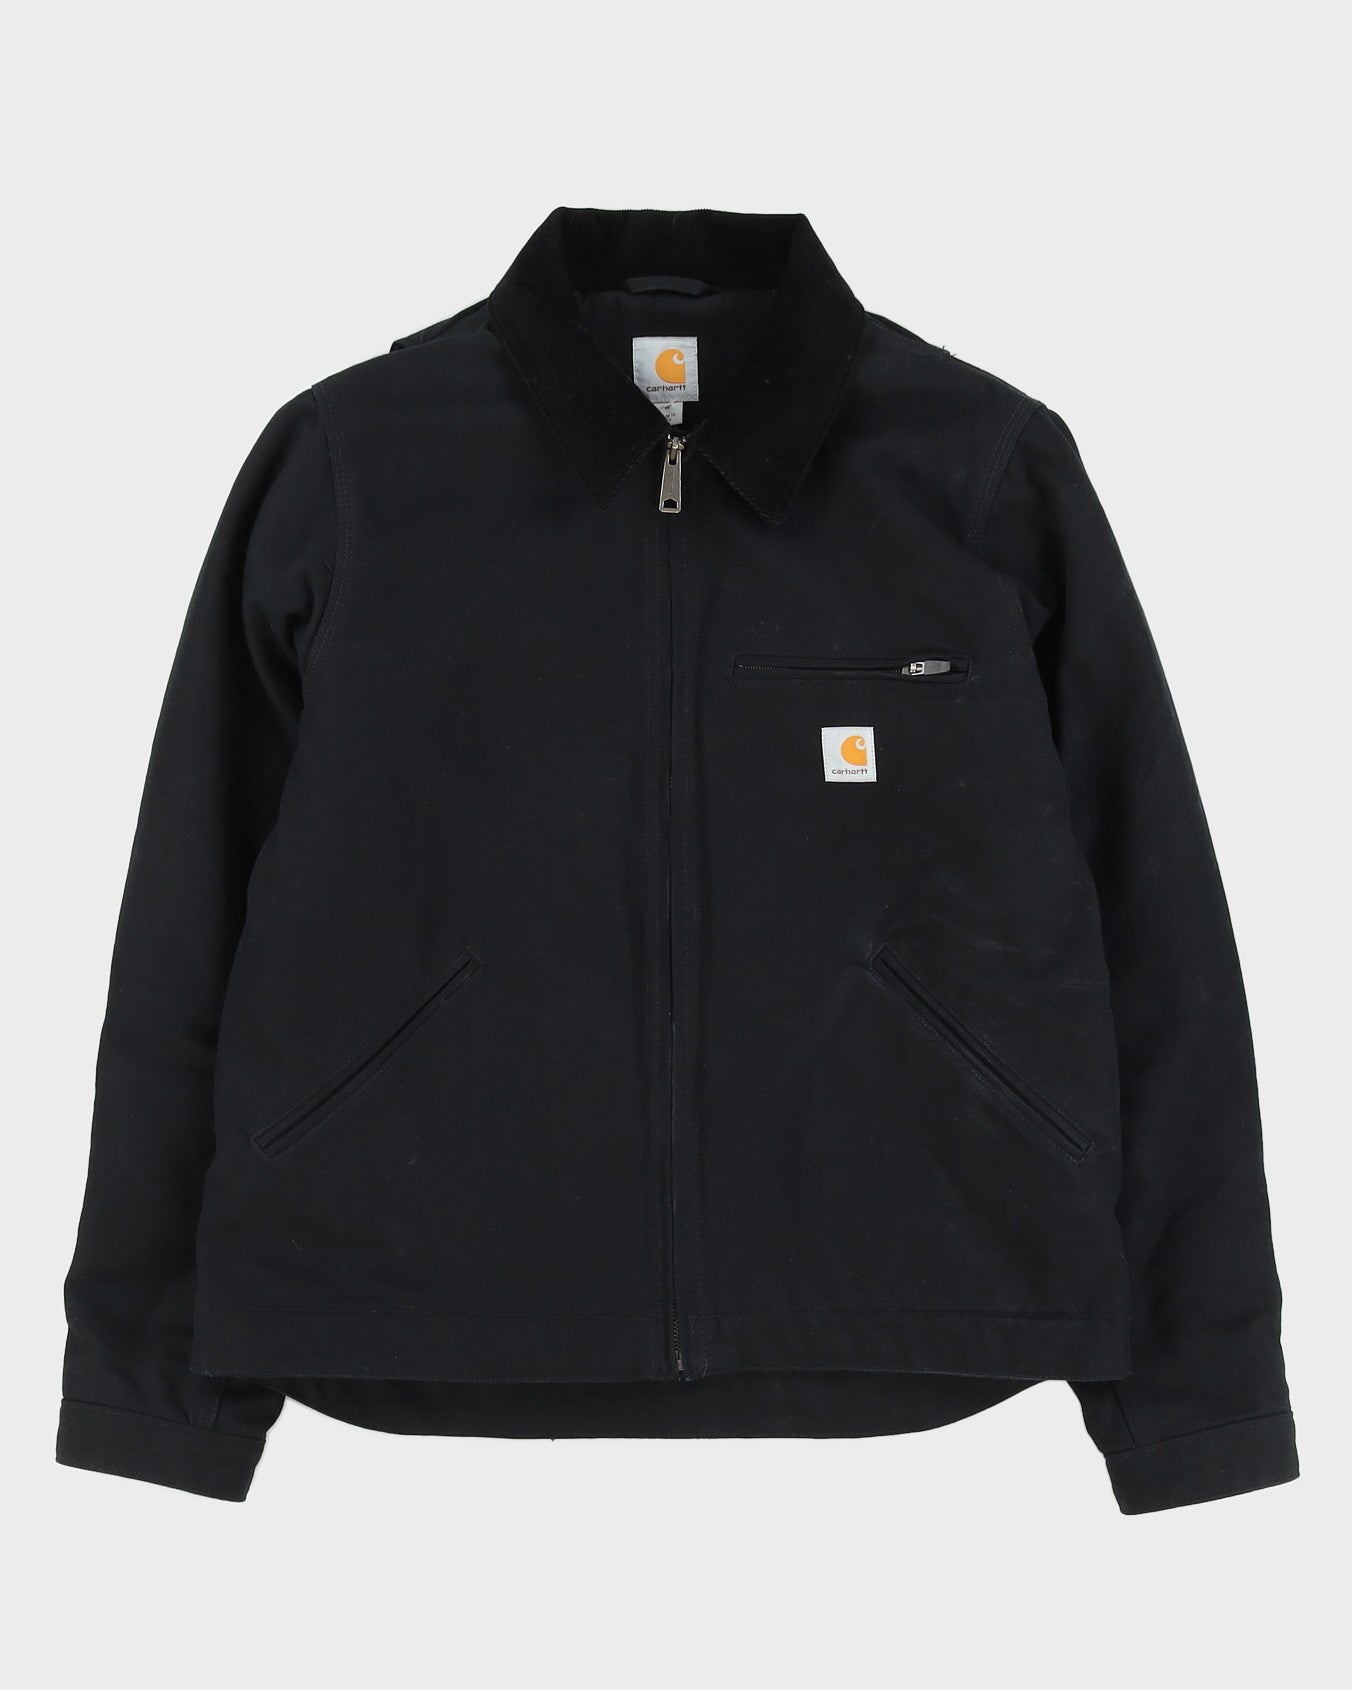 Carhartt Black Workwear Fleece Lined Jacket - M